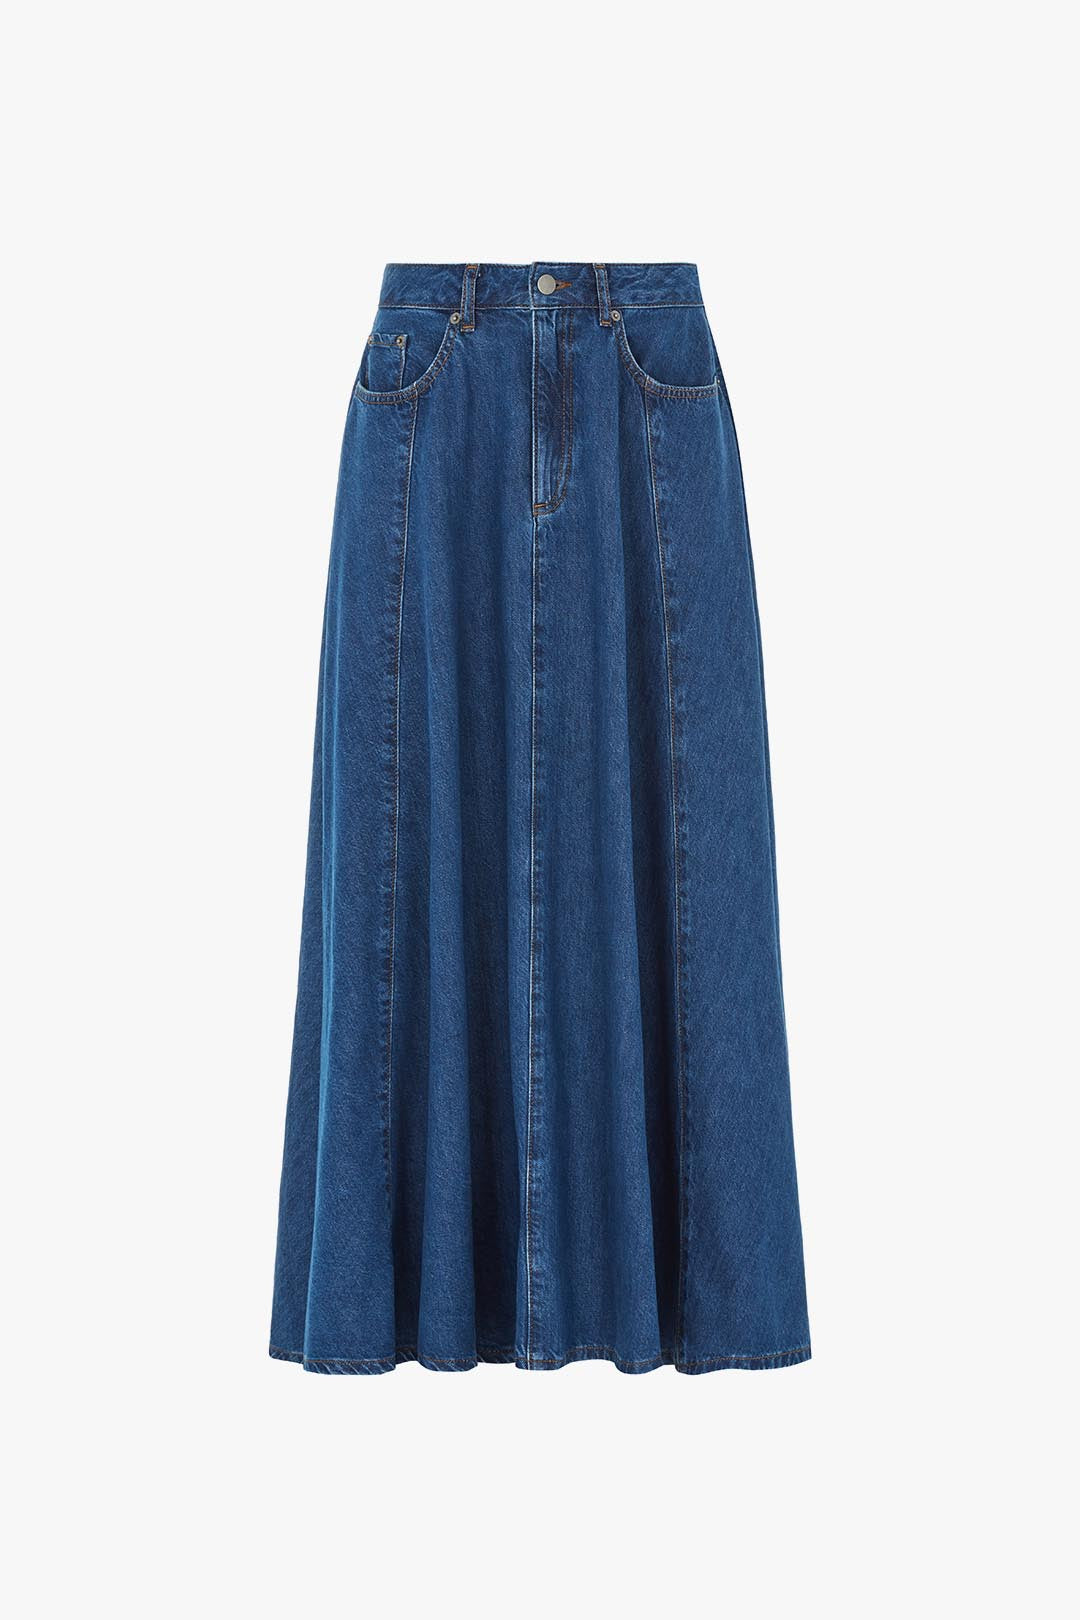 Luna | Volume Ankle Length Skirt in Mid Blue | ALIGNE